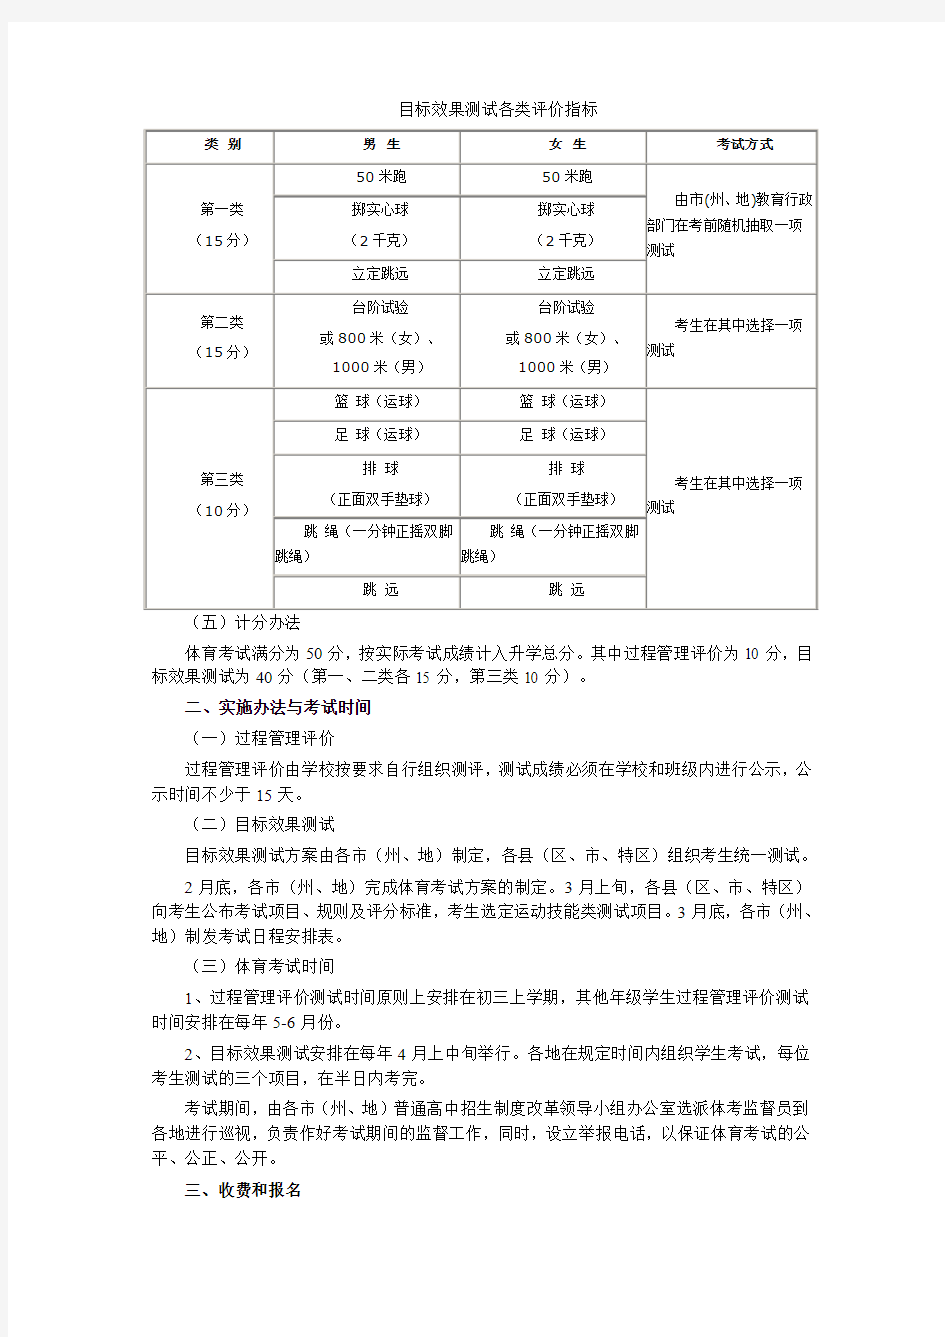 贵州省初中毕业生学业(升学)体育考试工作实施方案(修订稿)